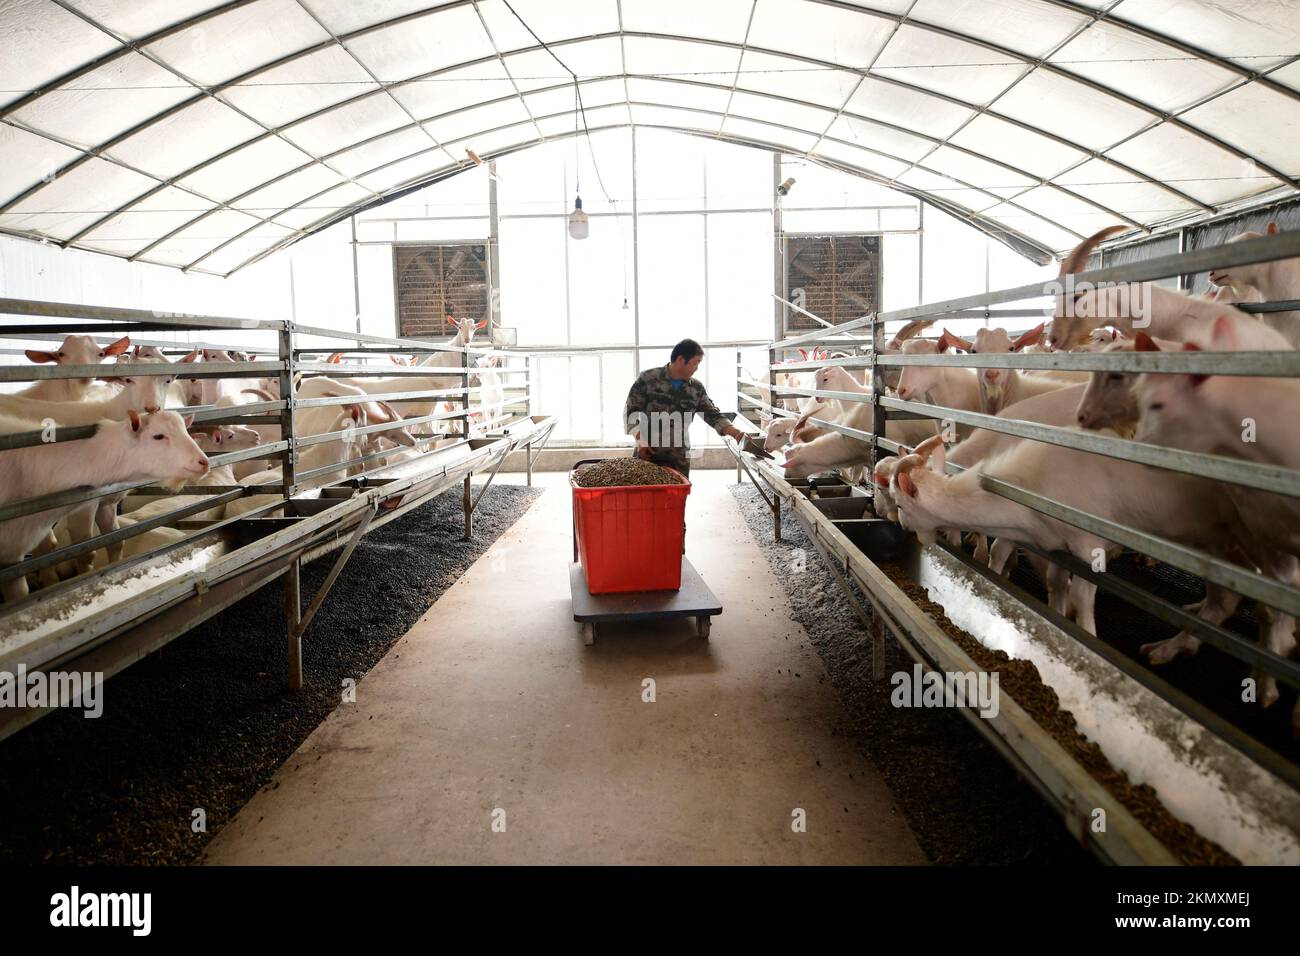 NANTONG, CHINE - le 26 NOVEMBRE 2022 - Un éleveur nourrit des chèvres dans une ferme de moutons à Nantong, province de Jiangsu, Chine, le 26 novembre 2022. Banque D'Images